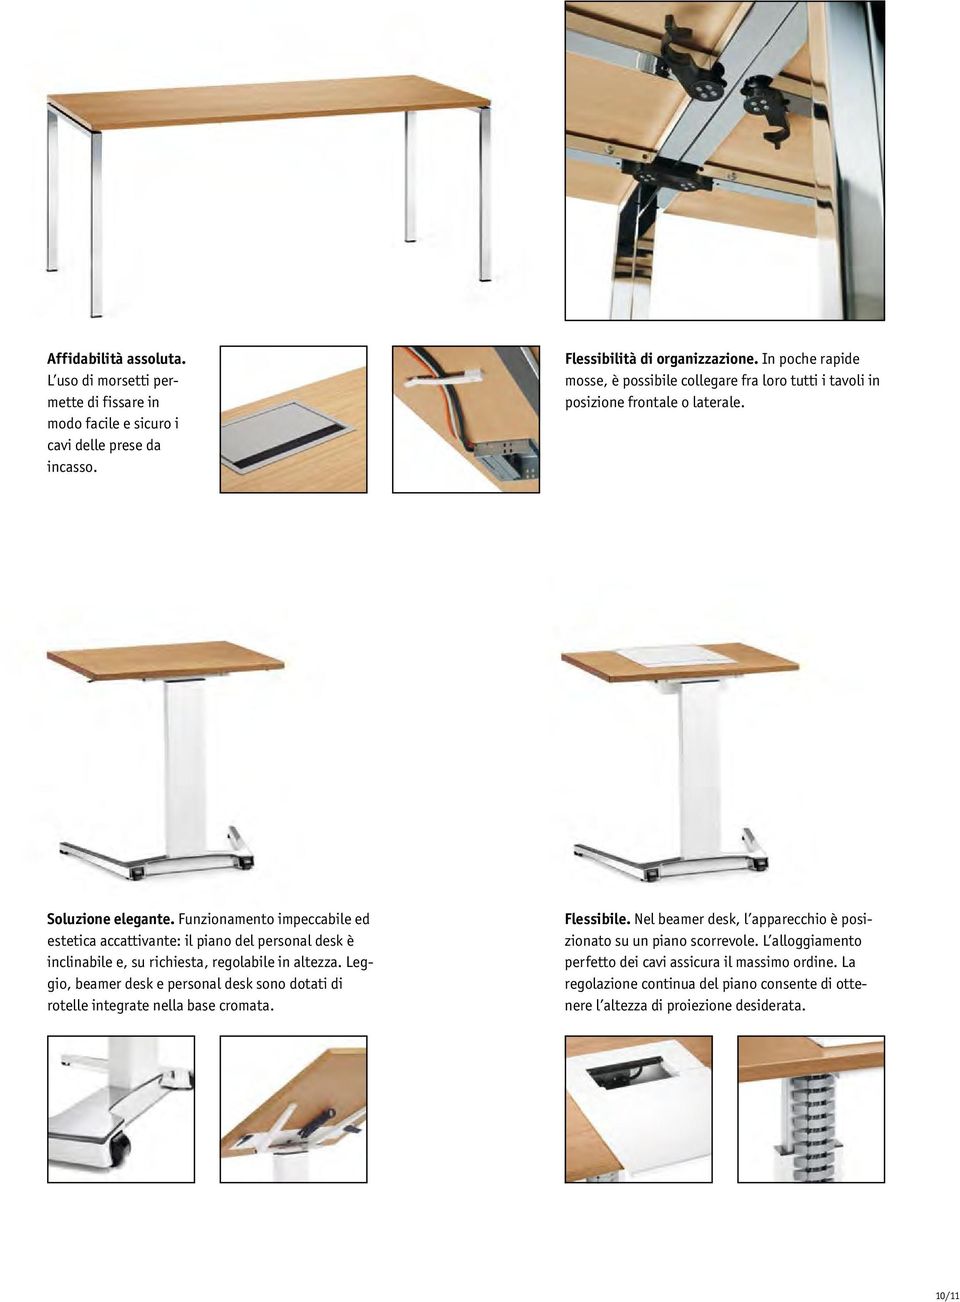 Funzionamento impeccabile ed estetica accattivante: il piano del personal desk è inclinabile e, su richiesta, regolabile in altezza.